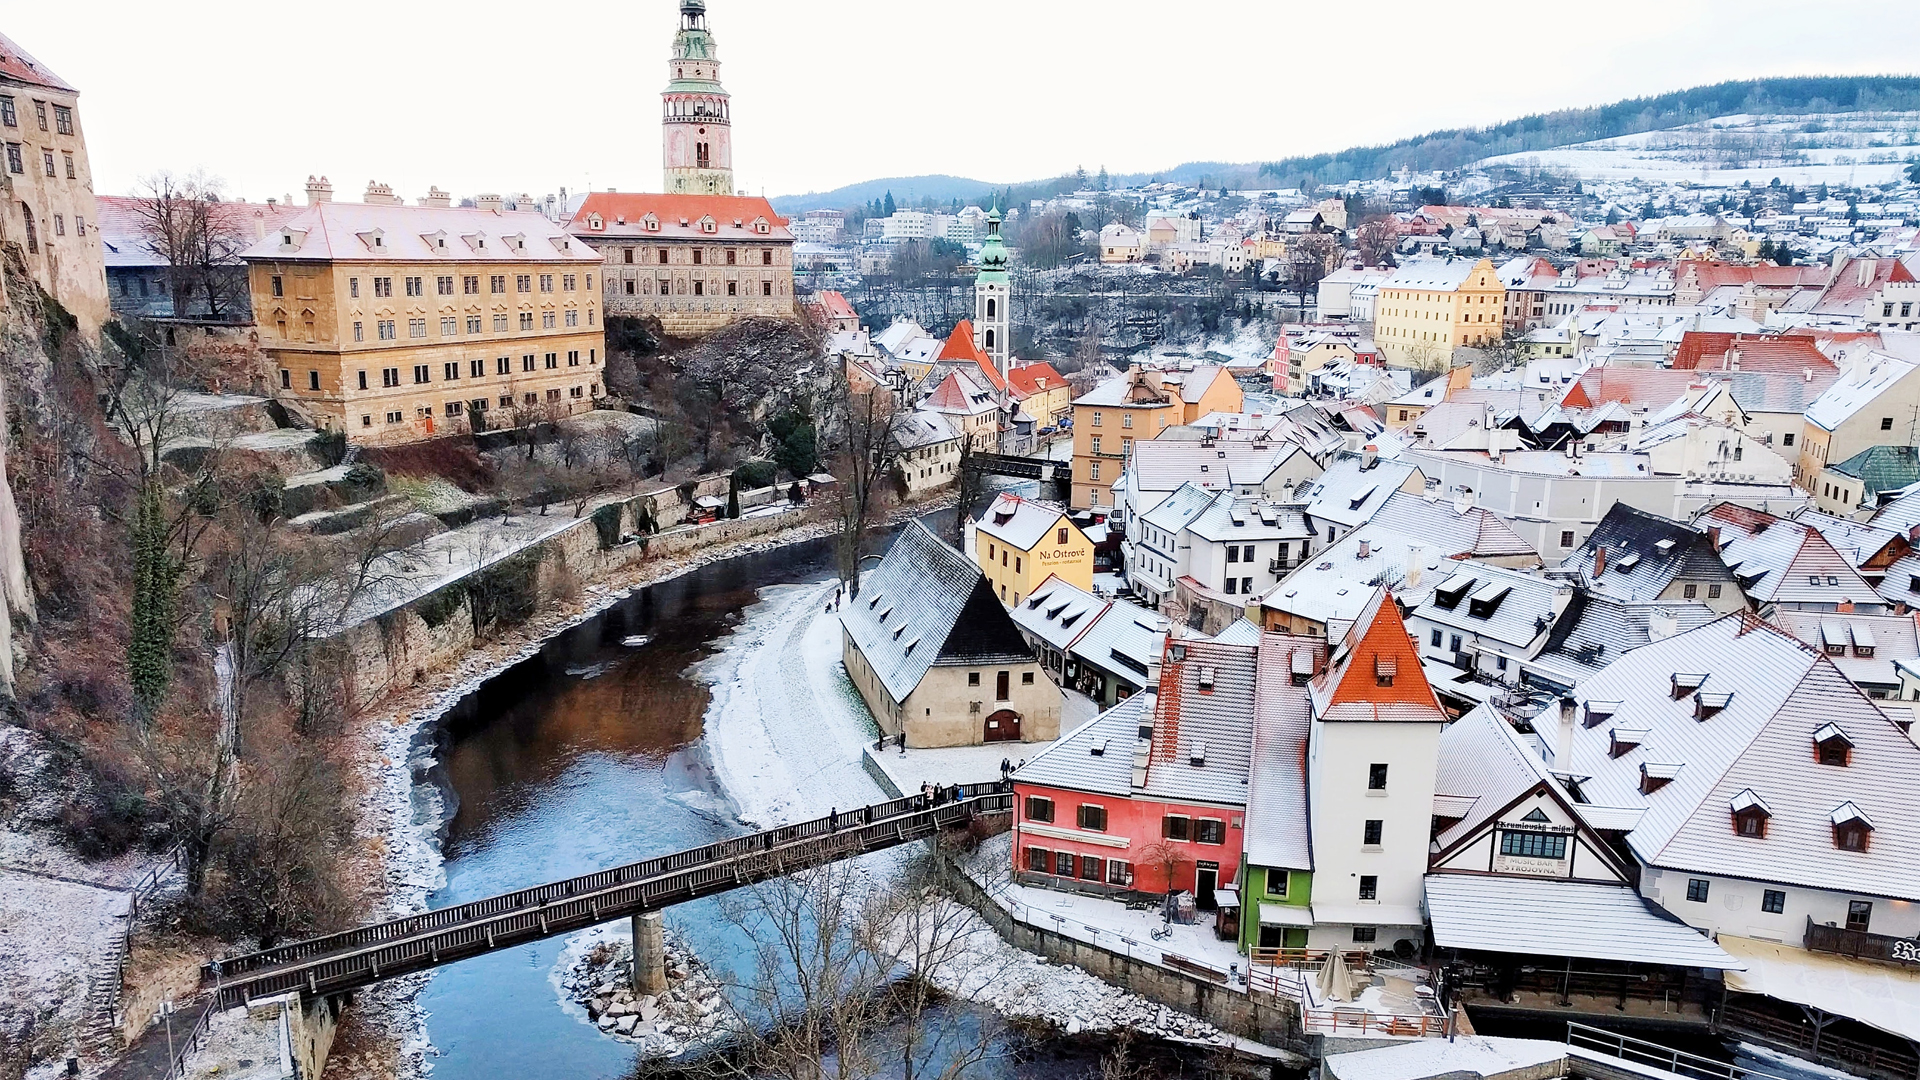 Beautiful town in the Czech Republic